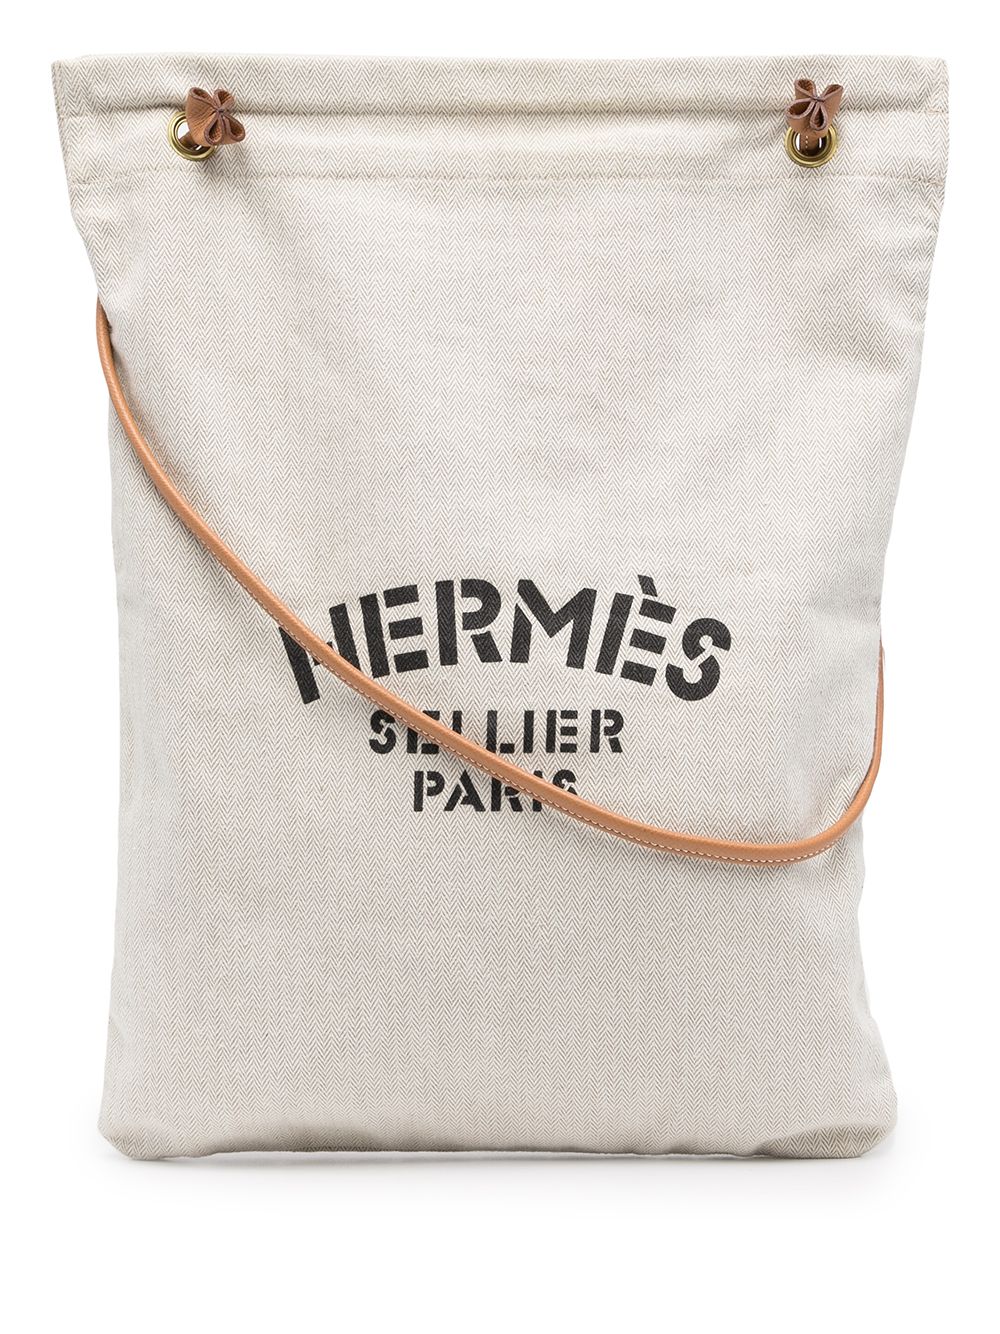 HERMES Hermes Aline GM shoulder bag cotton canvas leather natural black  brown gold hardware tote